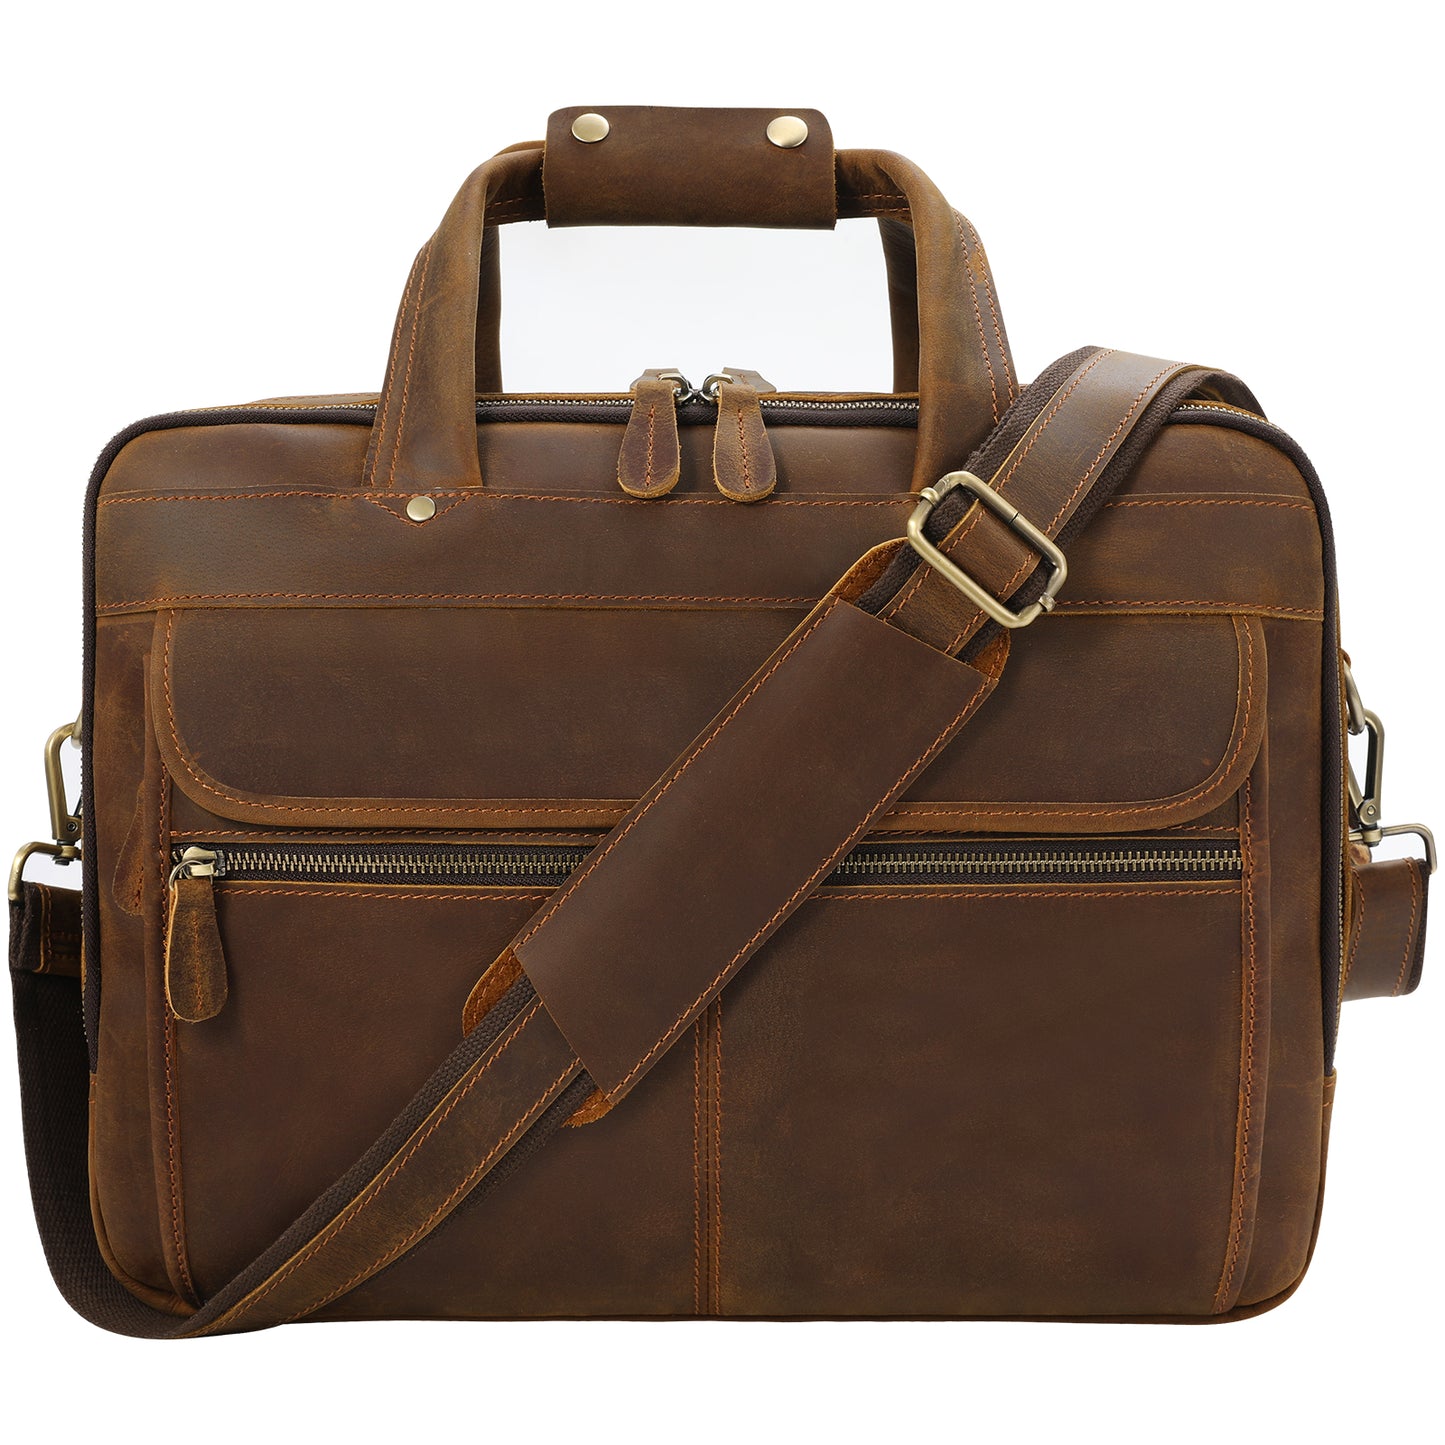 Jack&Chris Leather Briefcase for Men,Retro Business Travel Messenger Bag,Large 15.6 Laptop Work Bag